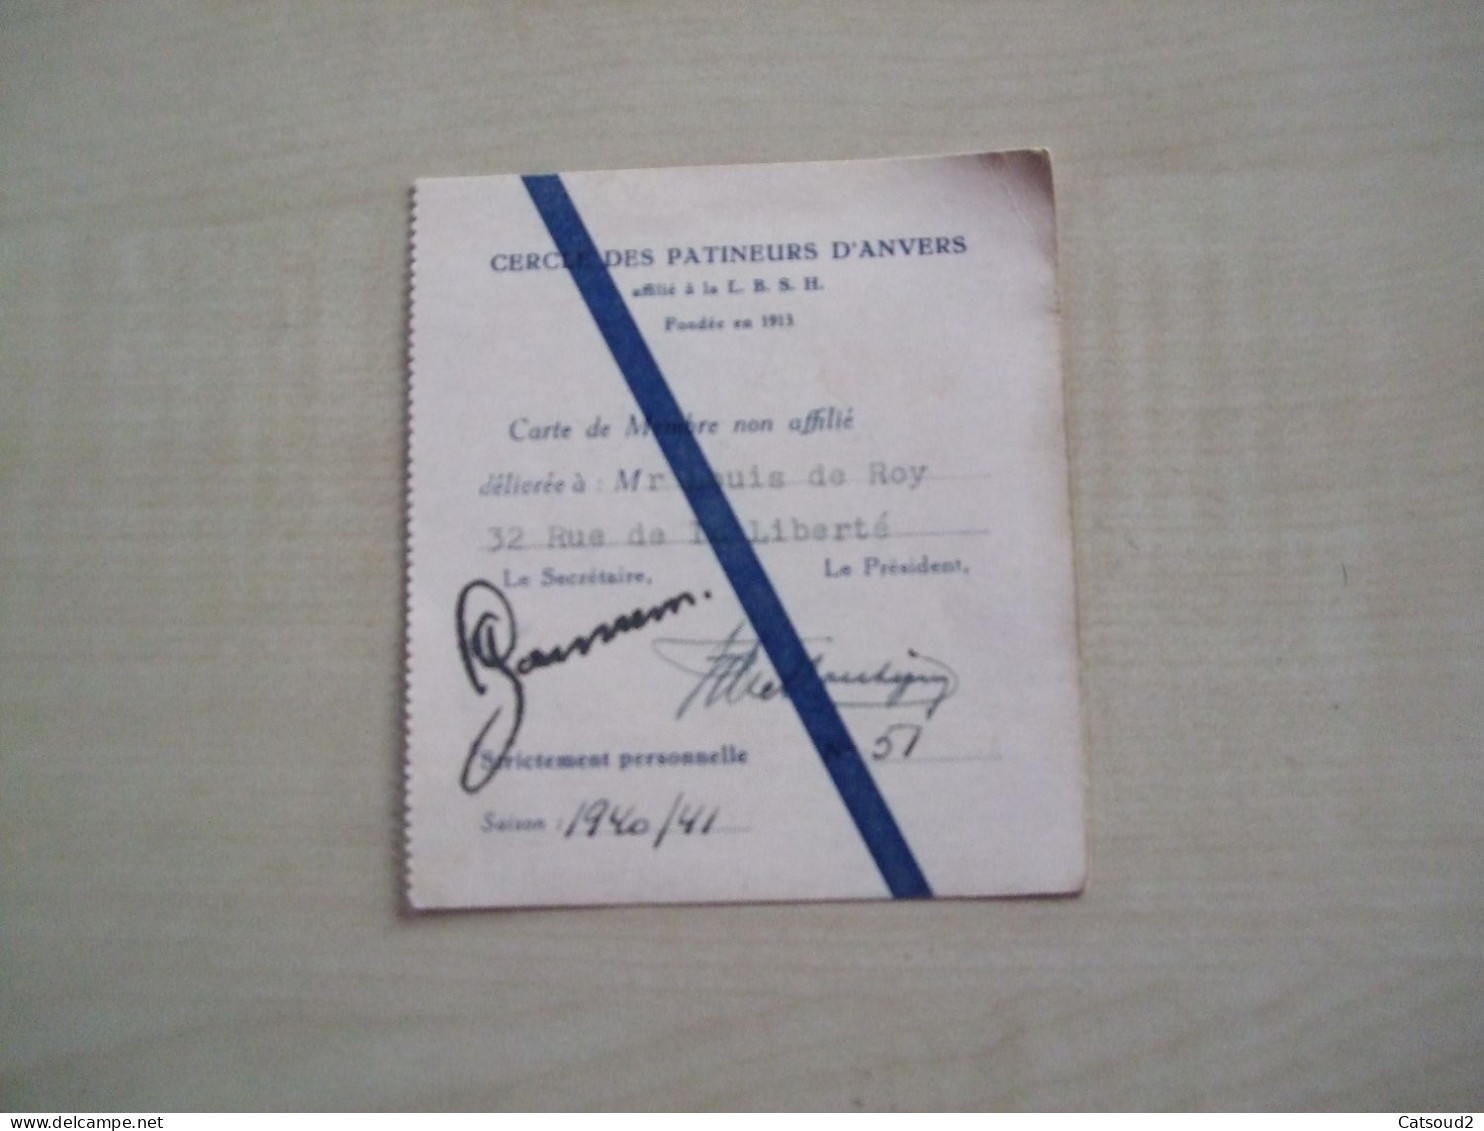 Carte De Membre Ancienne 1940/41 CERCLE DES PATINEURS D'ANVERS - Tessere Associative